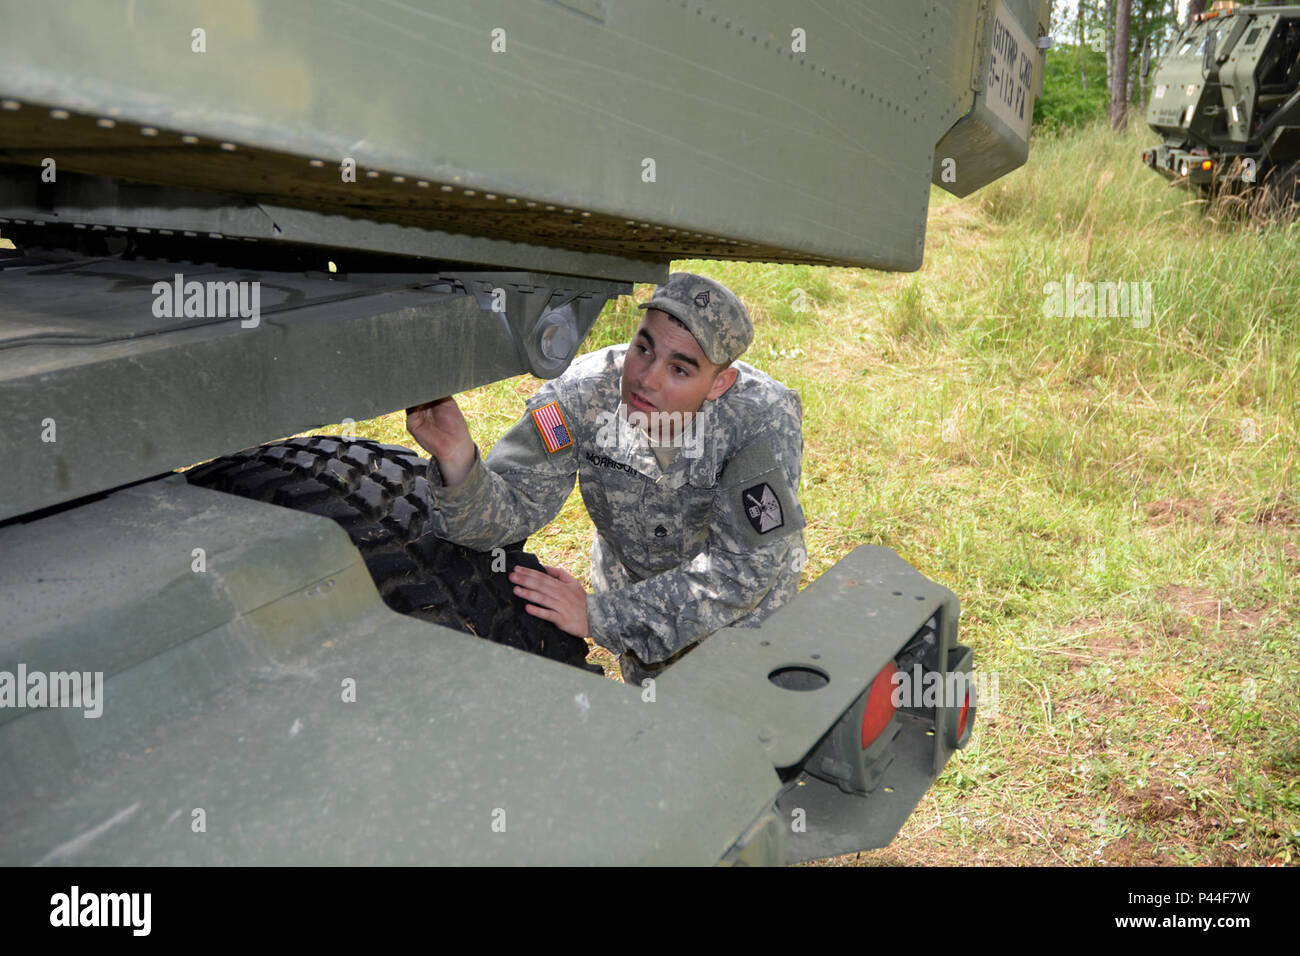 Le sergent de l'armée américaine. Clinton Morrison, 5e bataillon du 113e Régiment d'artillerie (système de roquettes d'artillerie à grande mobilité), Caroline du Nord de la Garde nationale, inspecte un HIMARS launcher à Kielce, Pologne, Région de formation au cours de l'effort Anakonda 16 Juin 2, 2016. Une16 est l'un de l'armée américaine en Europe le multinationaux de formation. Il s'agit d'un exercice national polonais qui vise à former, de l'exercice, et d'intégrer la commande nationale polonaise et la structure des forces alliées, dans un environnement multinational, conjoint. (U.S. La Garde nationale de l'armée photo par le Sgt. 1re classe Robert Jordan, Caroline du Nat Banque D'Images